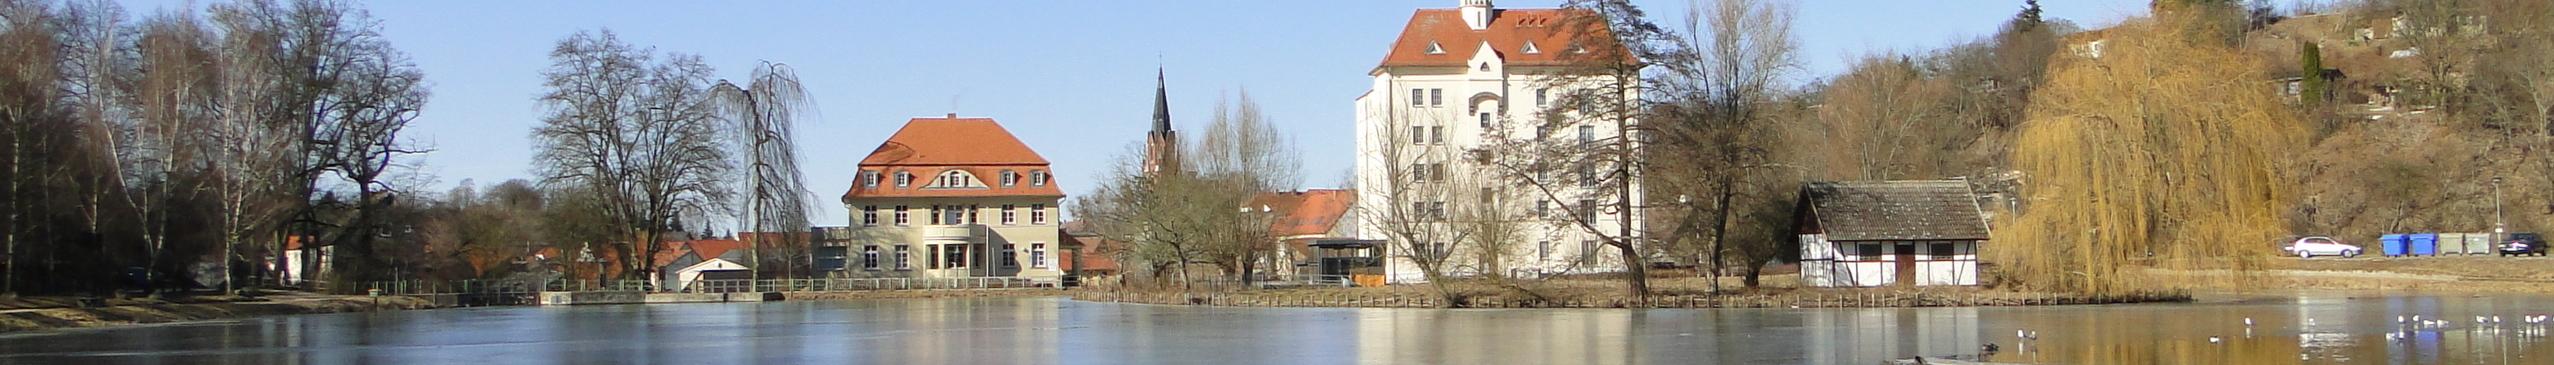 Banner image for Neubrandenburg on GigsGuide